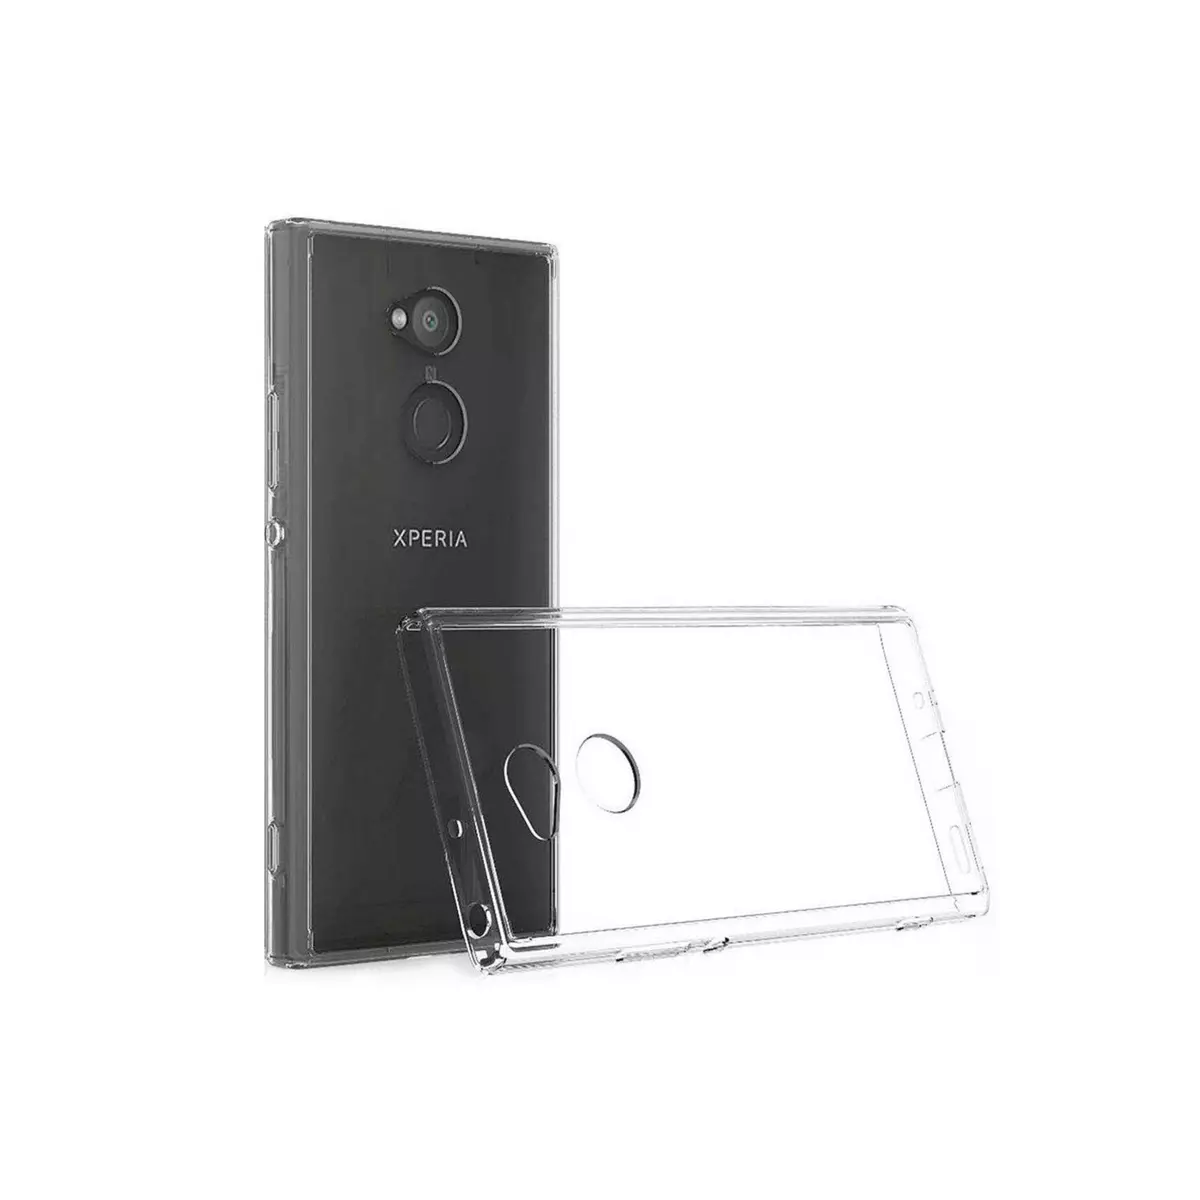 amahousse Coque Sony Xperia XA2 Ultra souple transparente légère et extra-fine